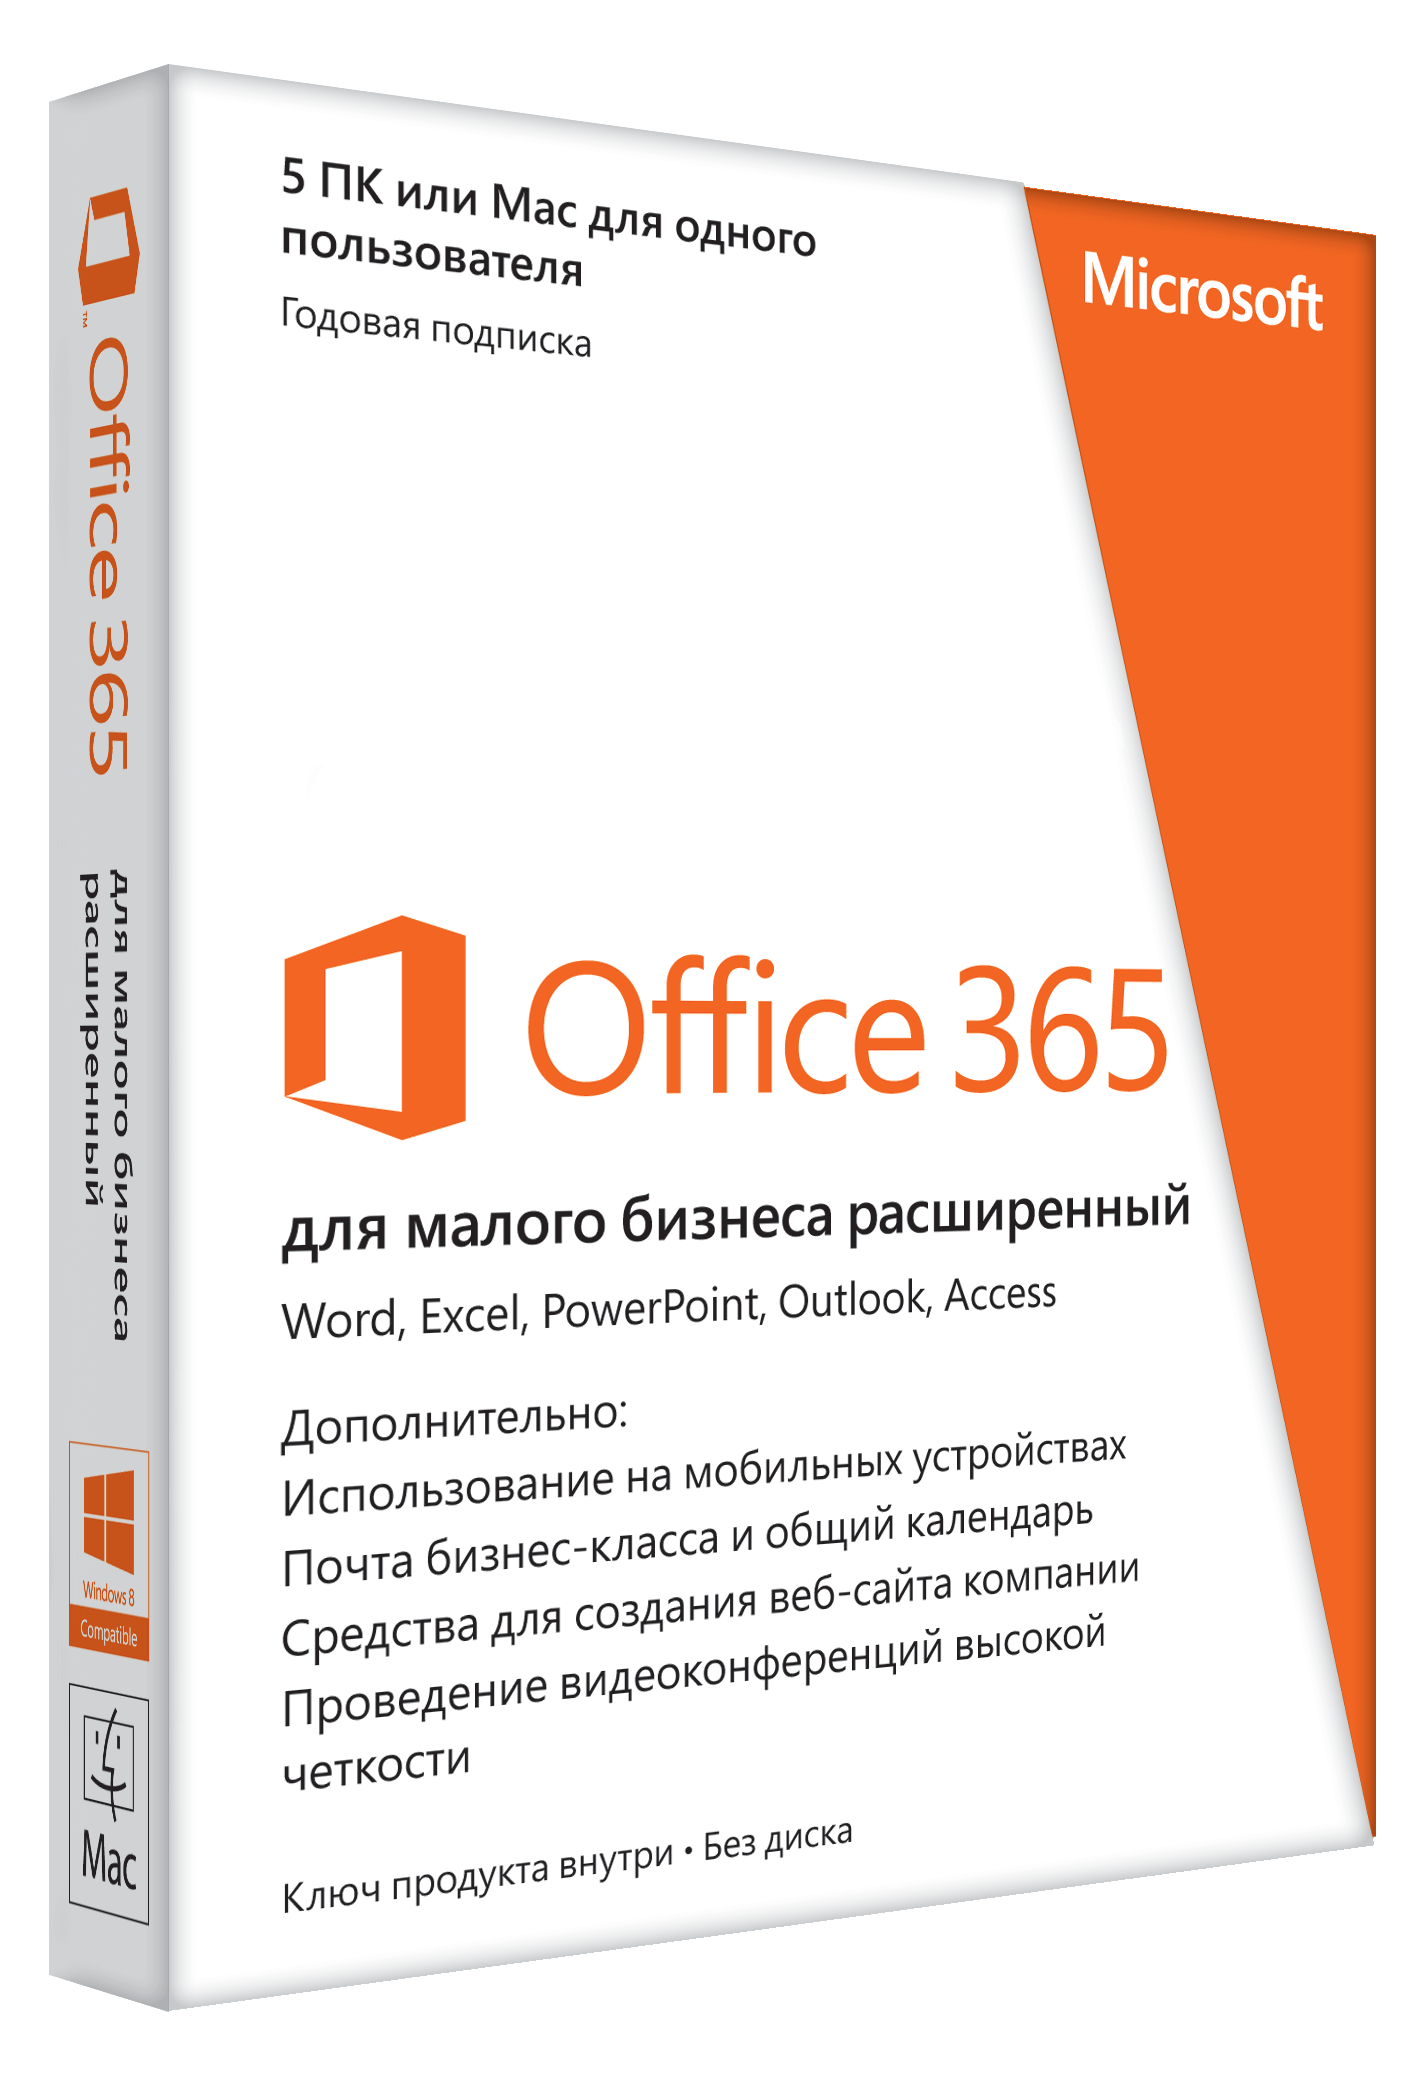 Microsoft Office 365 для малого бизнеса расширенны